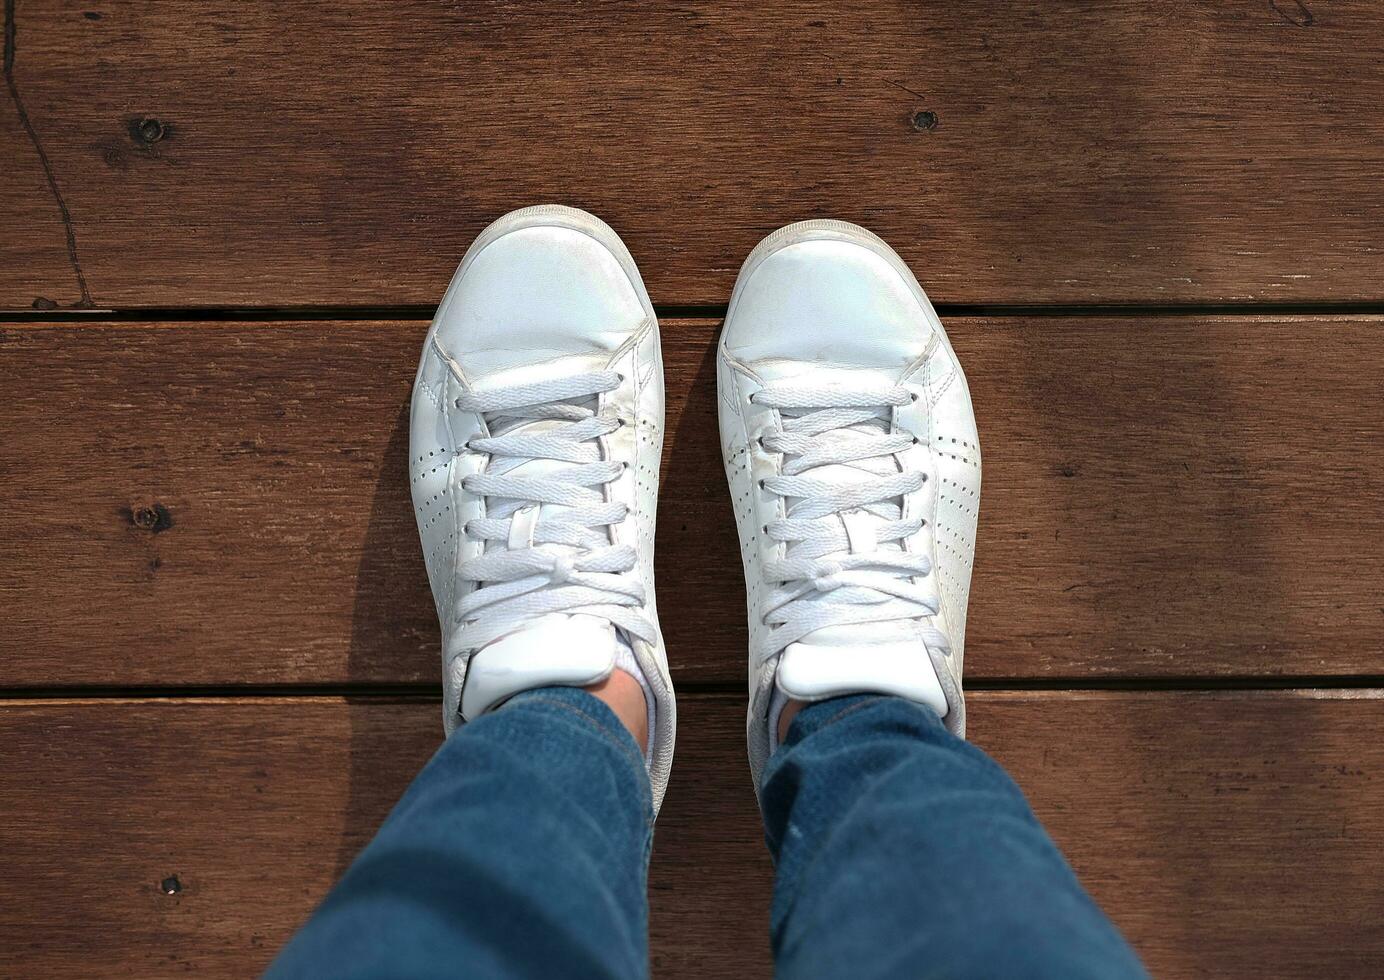 parte superior ver de blanco zapatillas y azul pantalones en mujer piernas en madera piso antecedentes foto